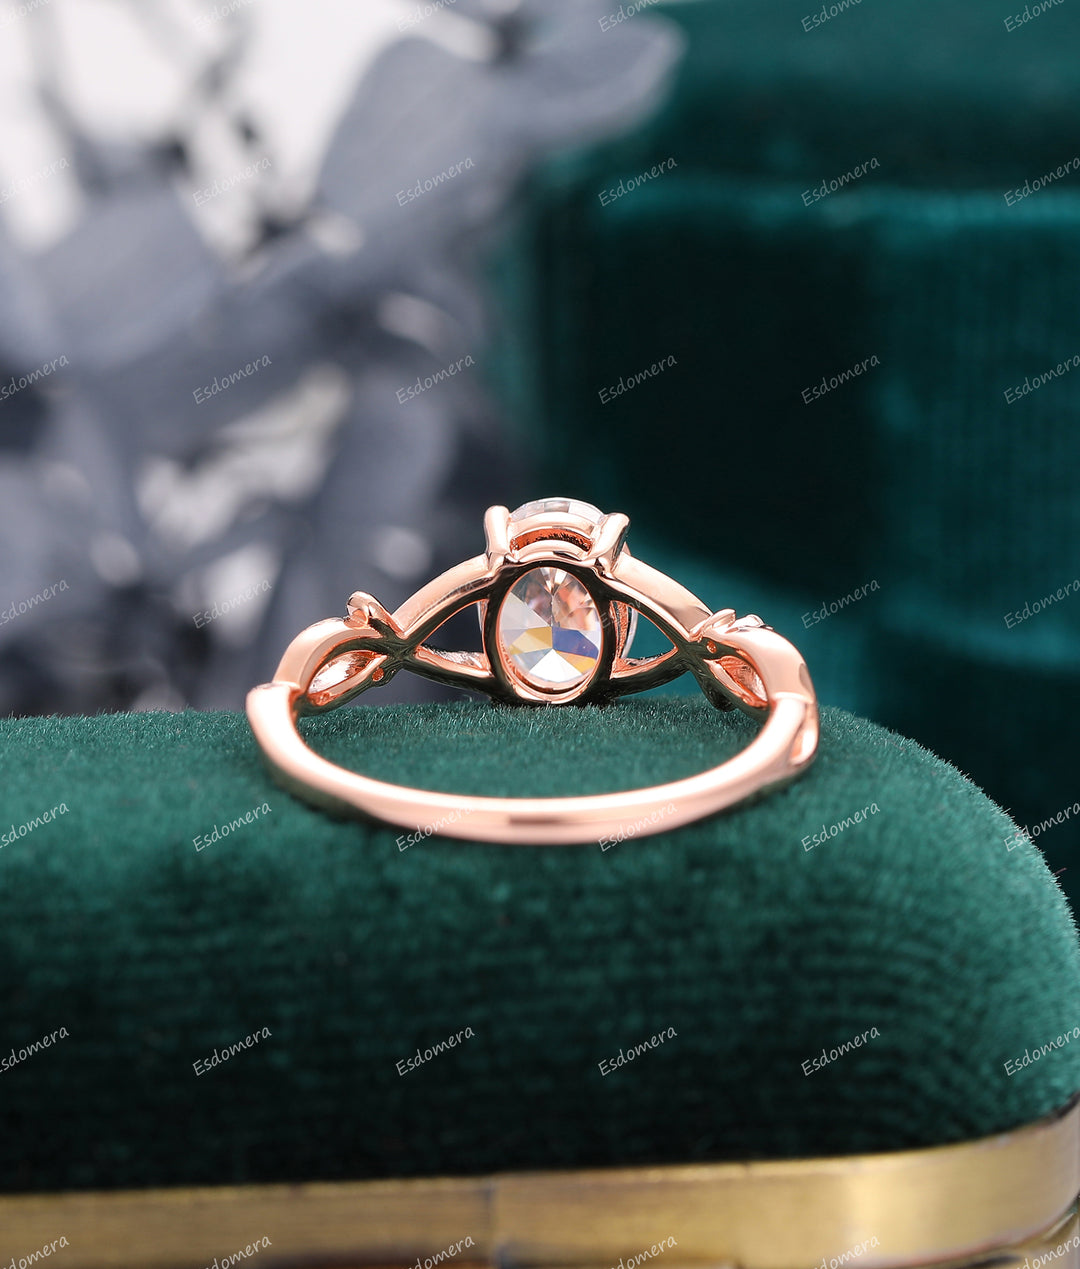 1.5CT Oval Cut Moissanite Ring, Cross Band Wedding Ring, 14K Soild Rose Gold Engagement Ring, Moissanite Promise Ring